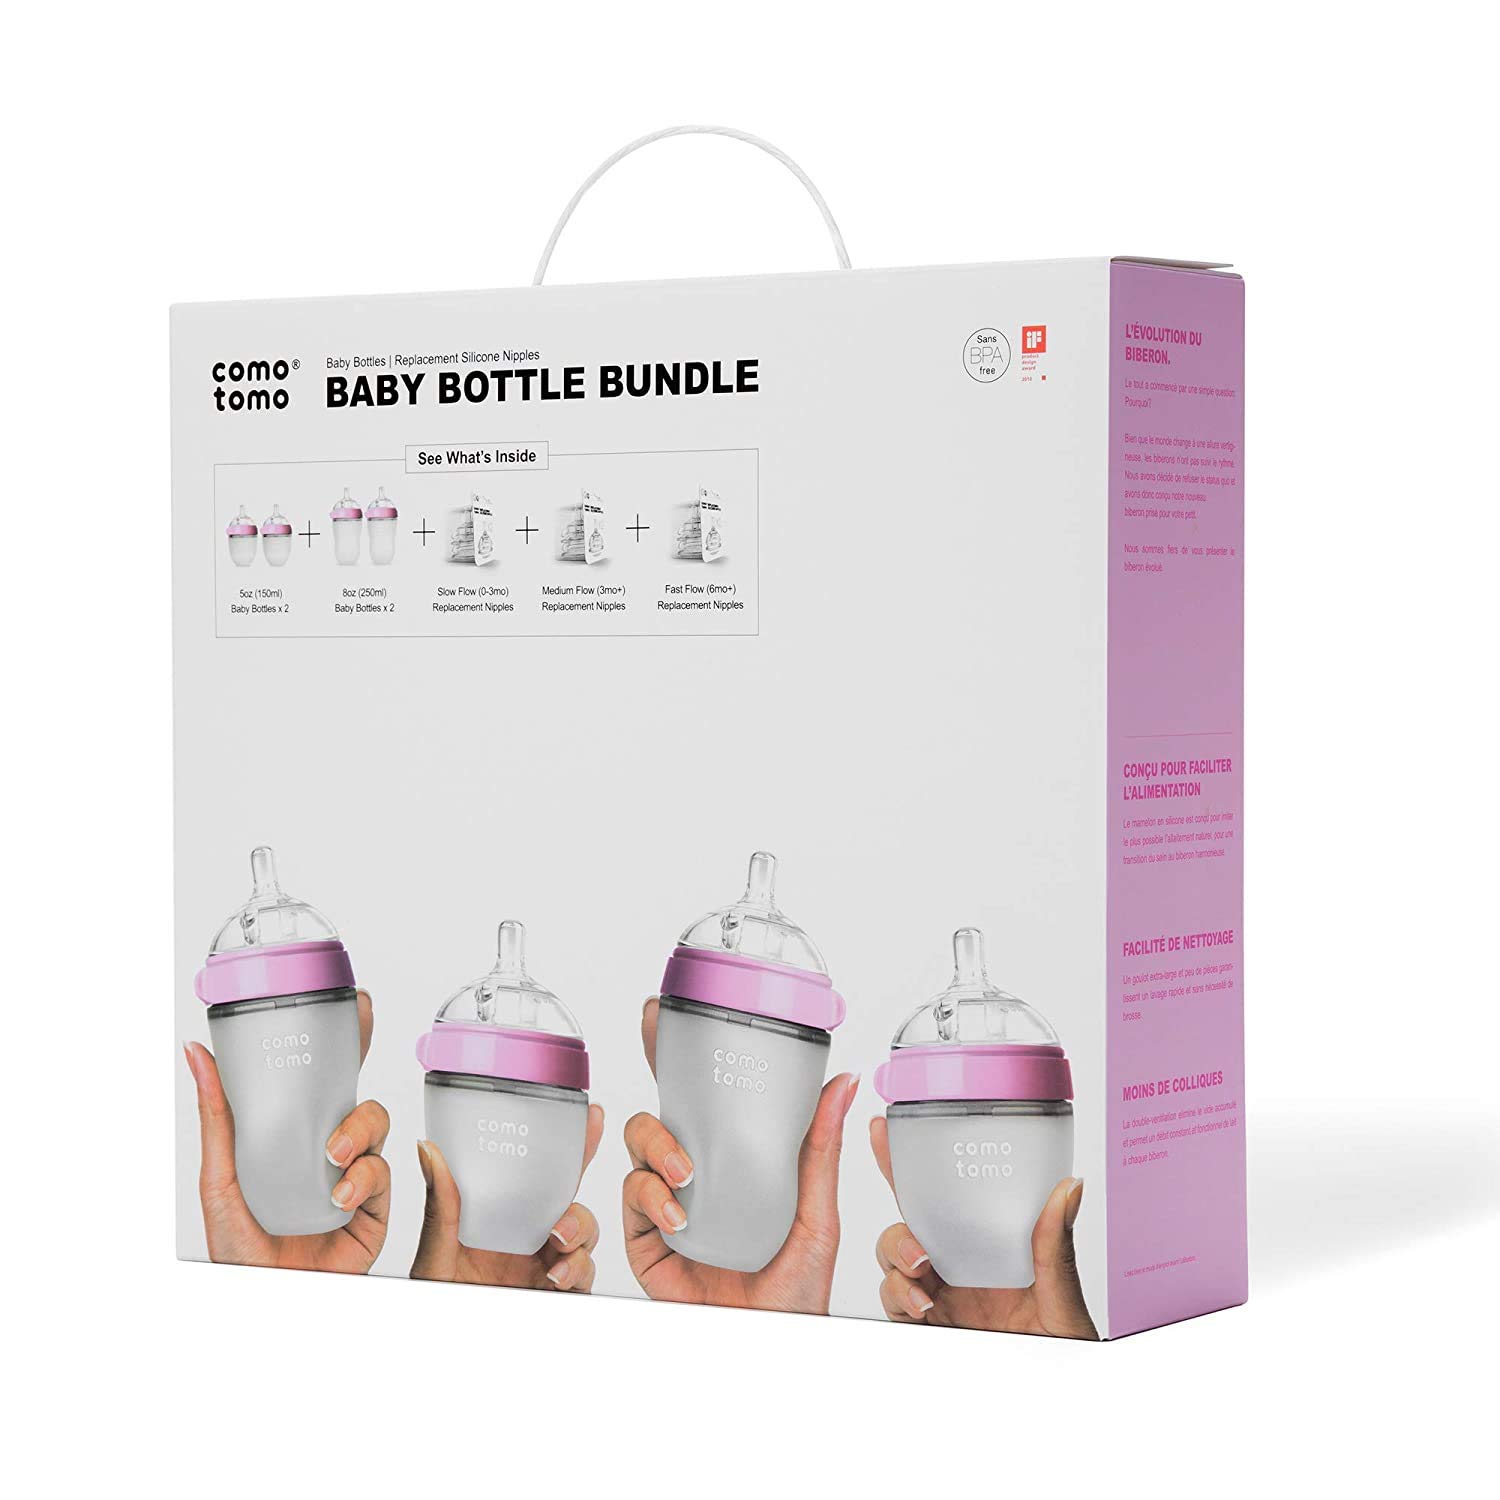 Comotomo コモトモ ベビーボトル 7ピースセット [ピンク] 哺乳瓶 / Baby Bottle Bundle [Pink] 7 Piece Set